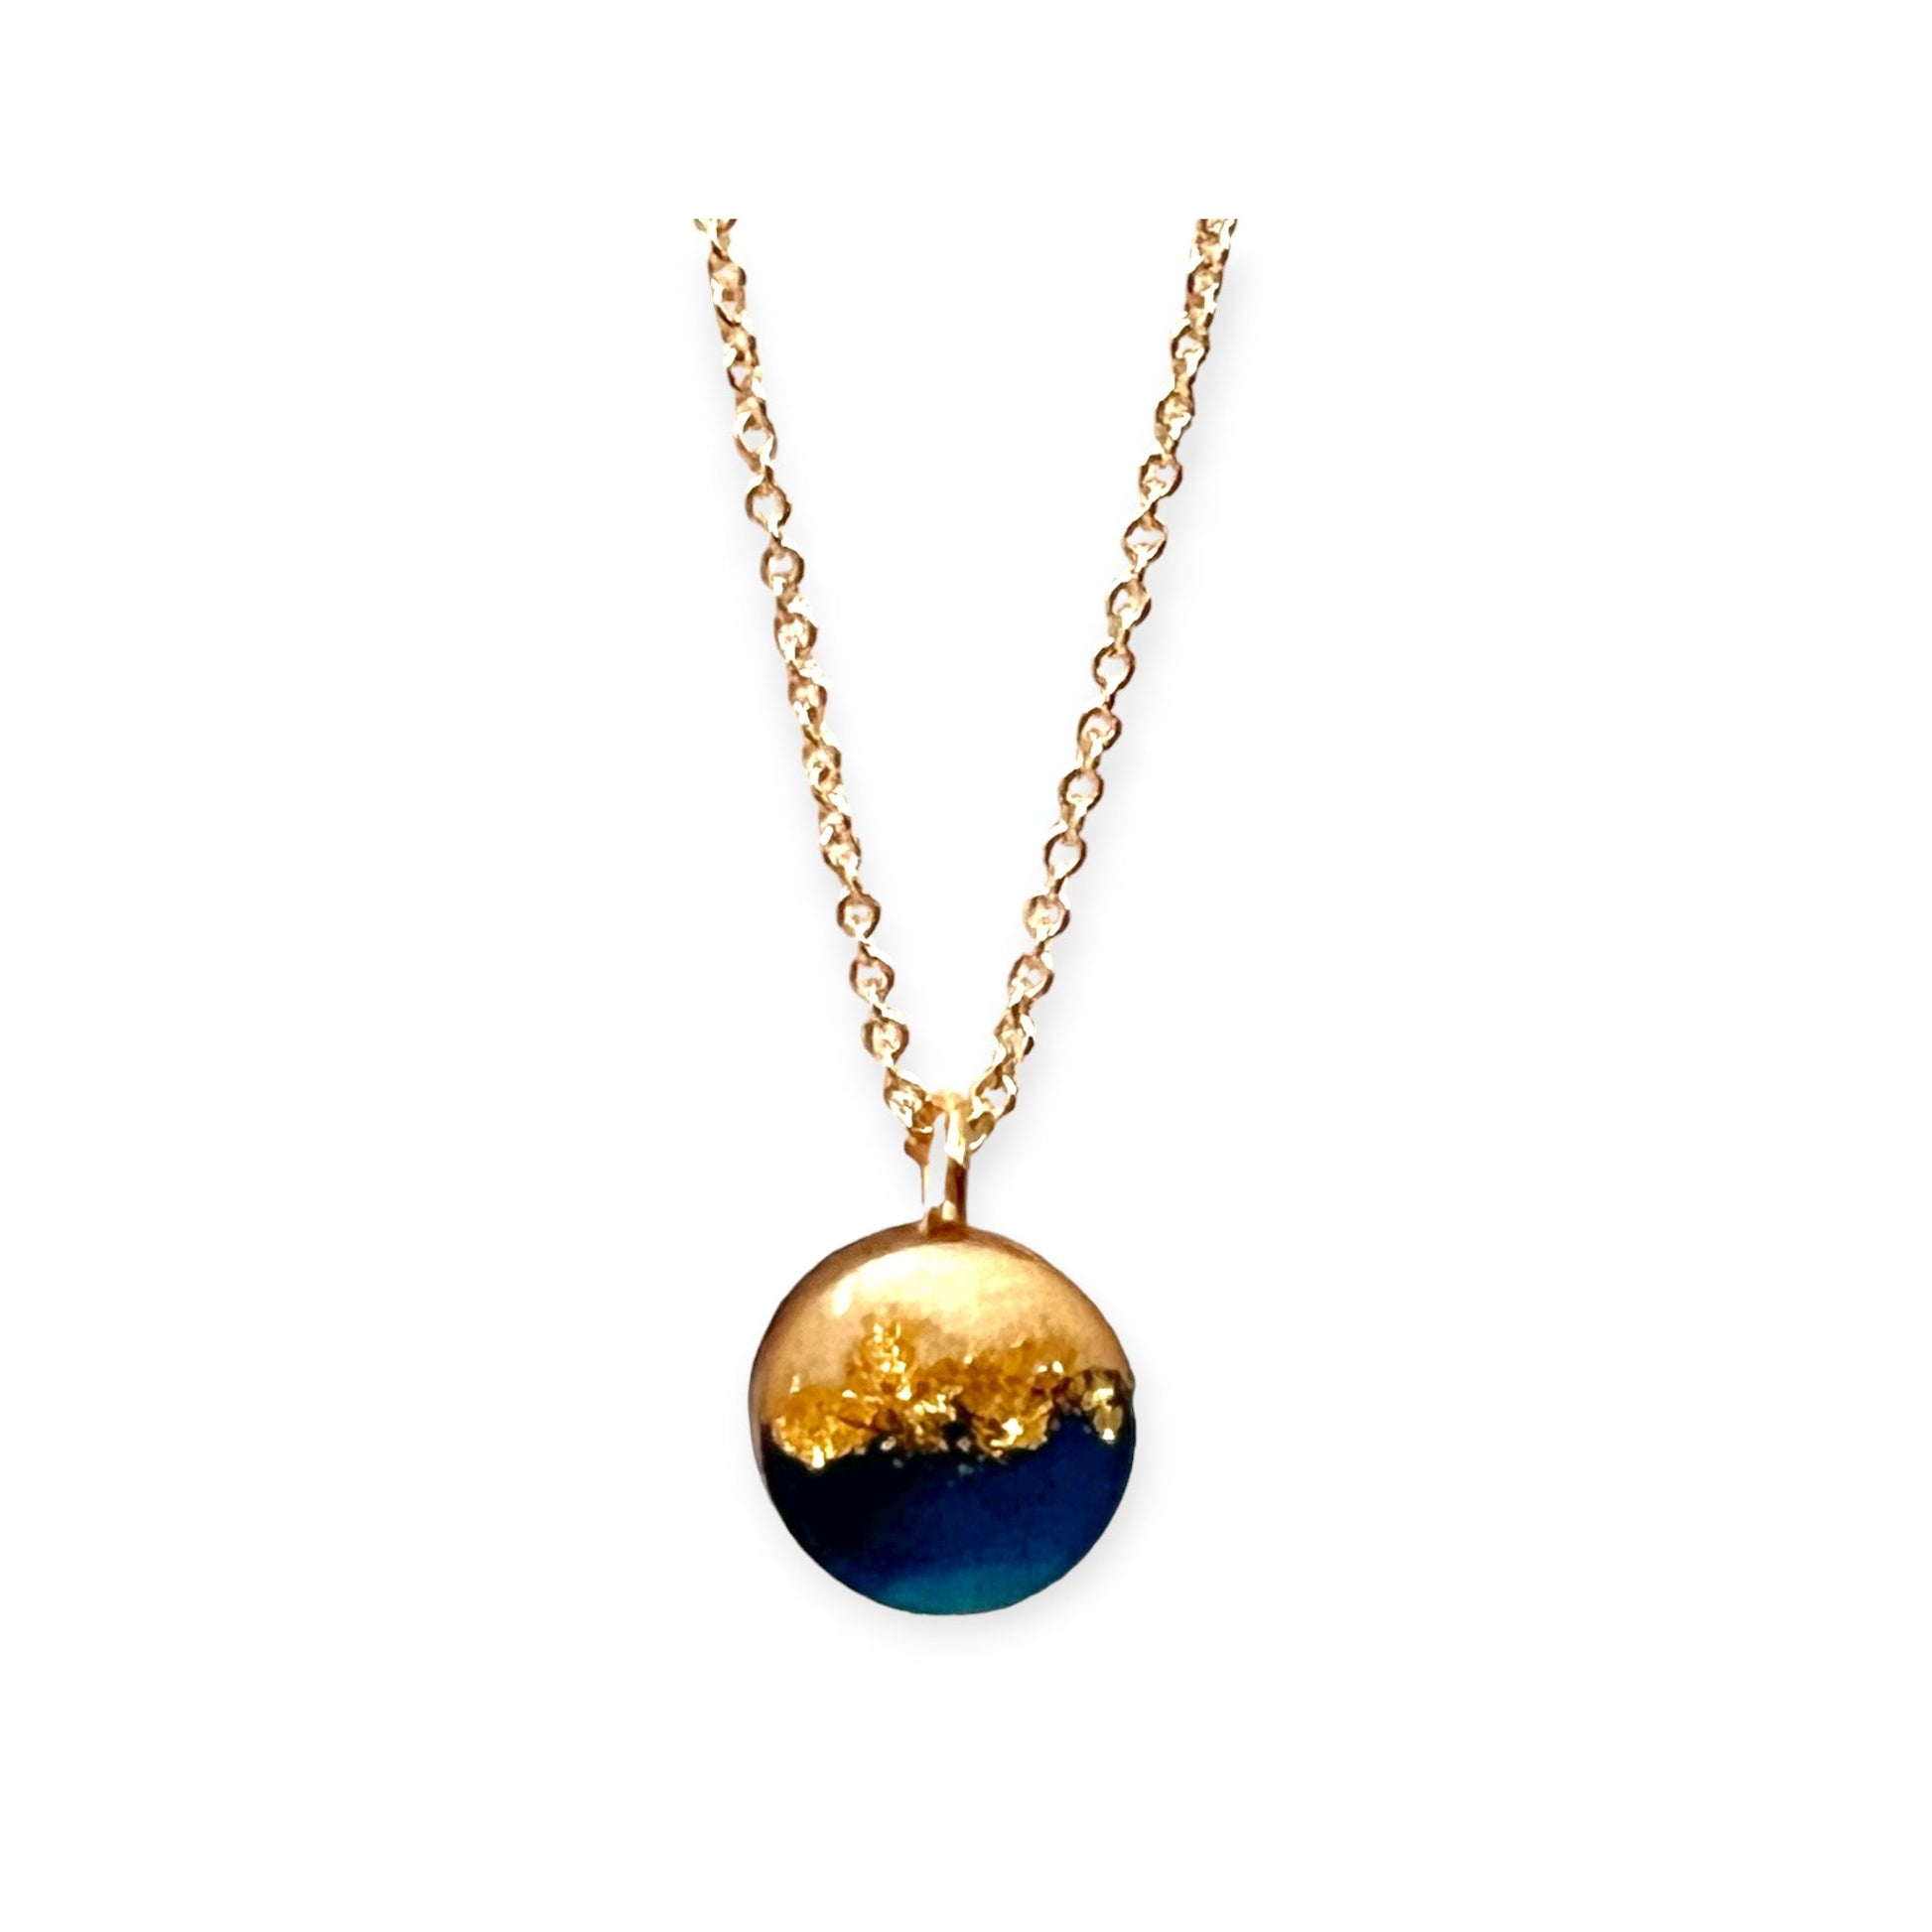 Delicate handcrafted circular pendant necklace - Sundara Joon